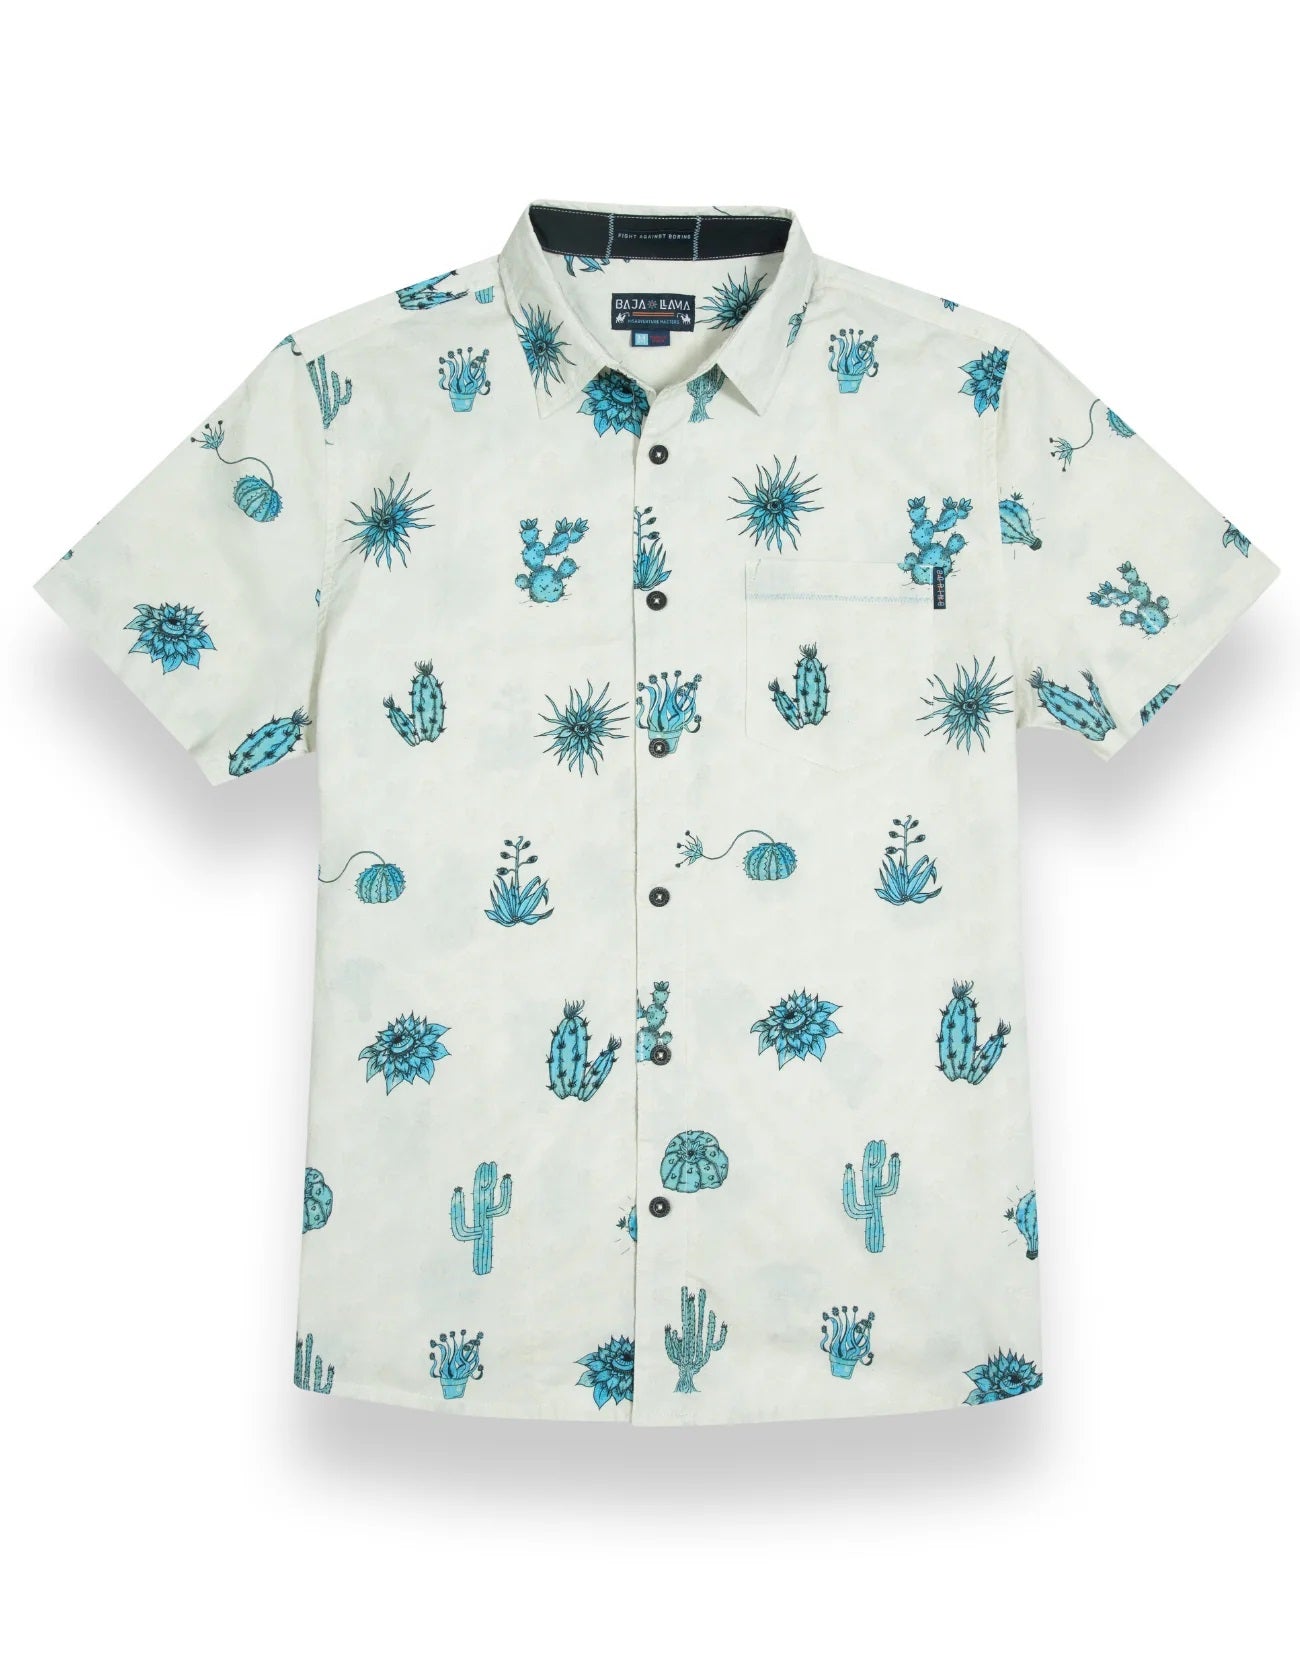 Men's 7-Seas Button Up Shirt